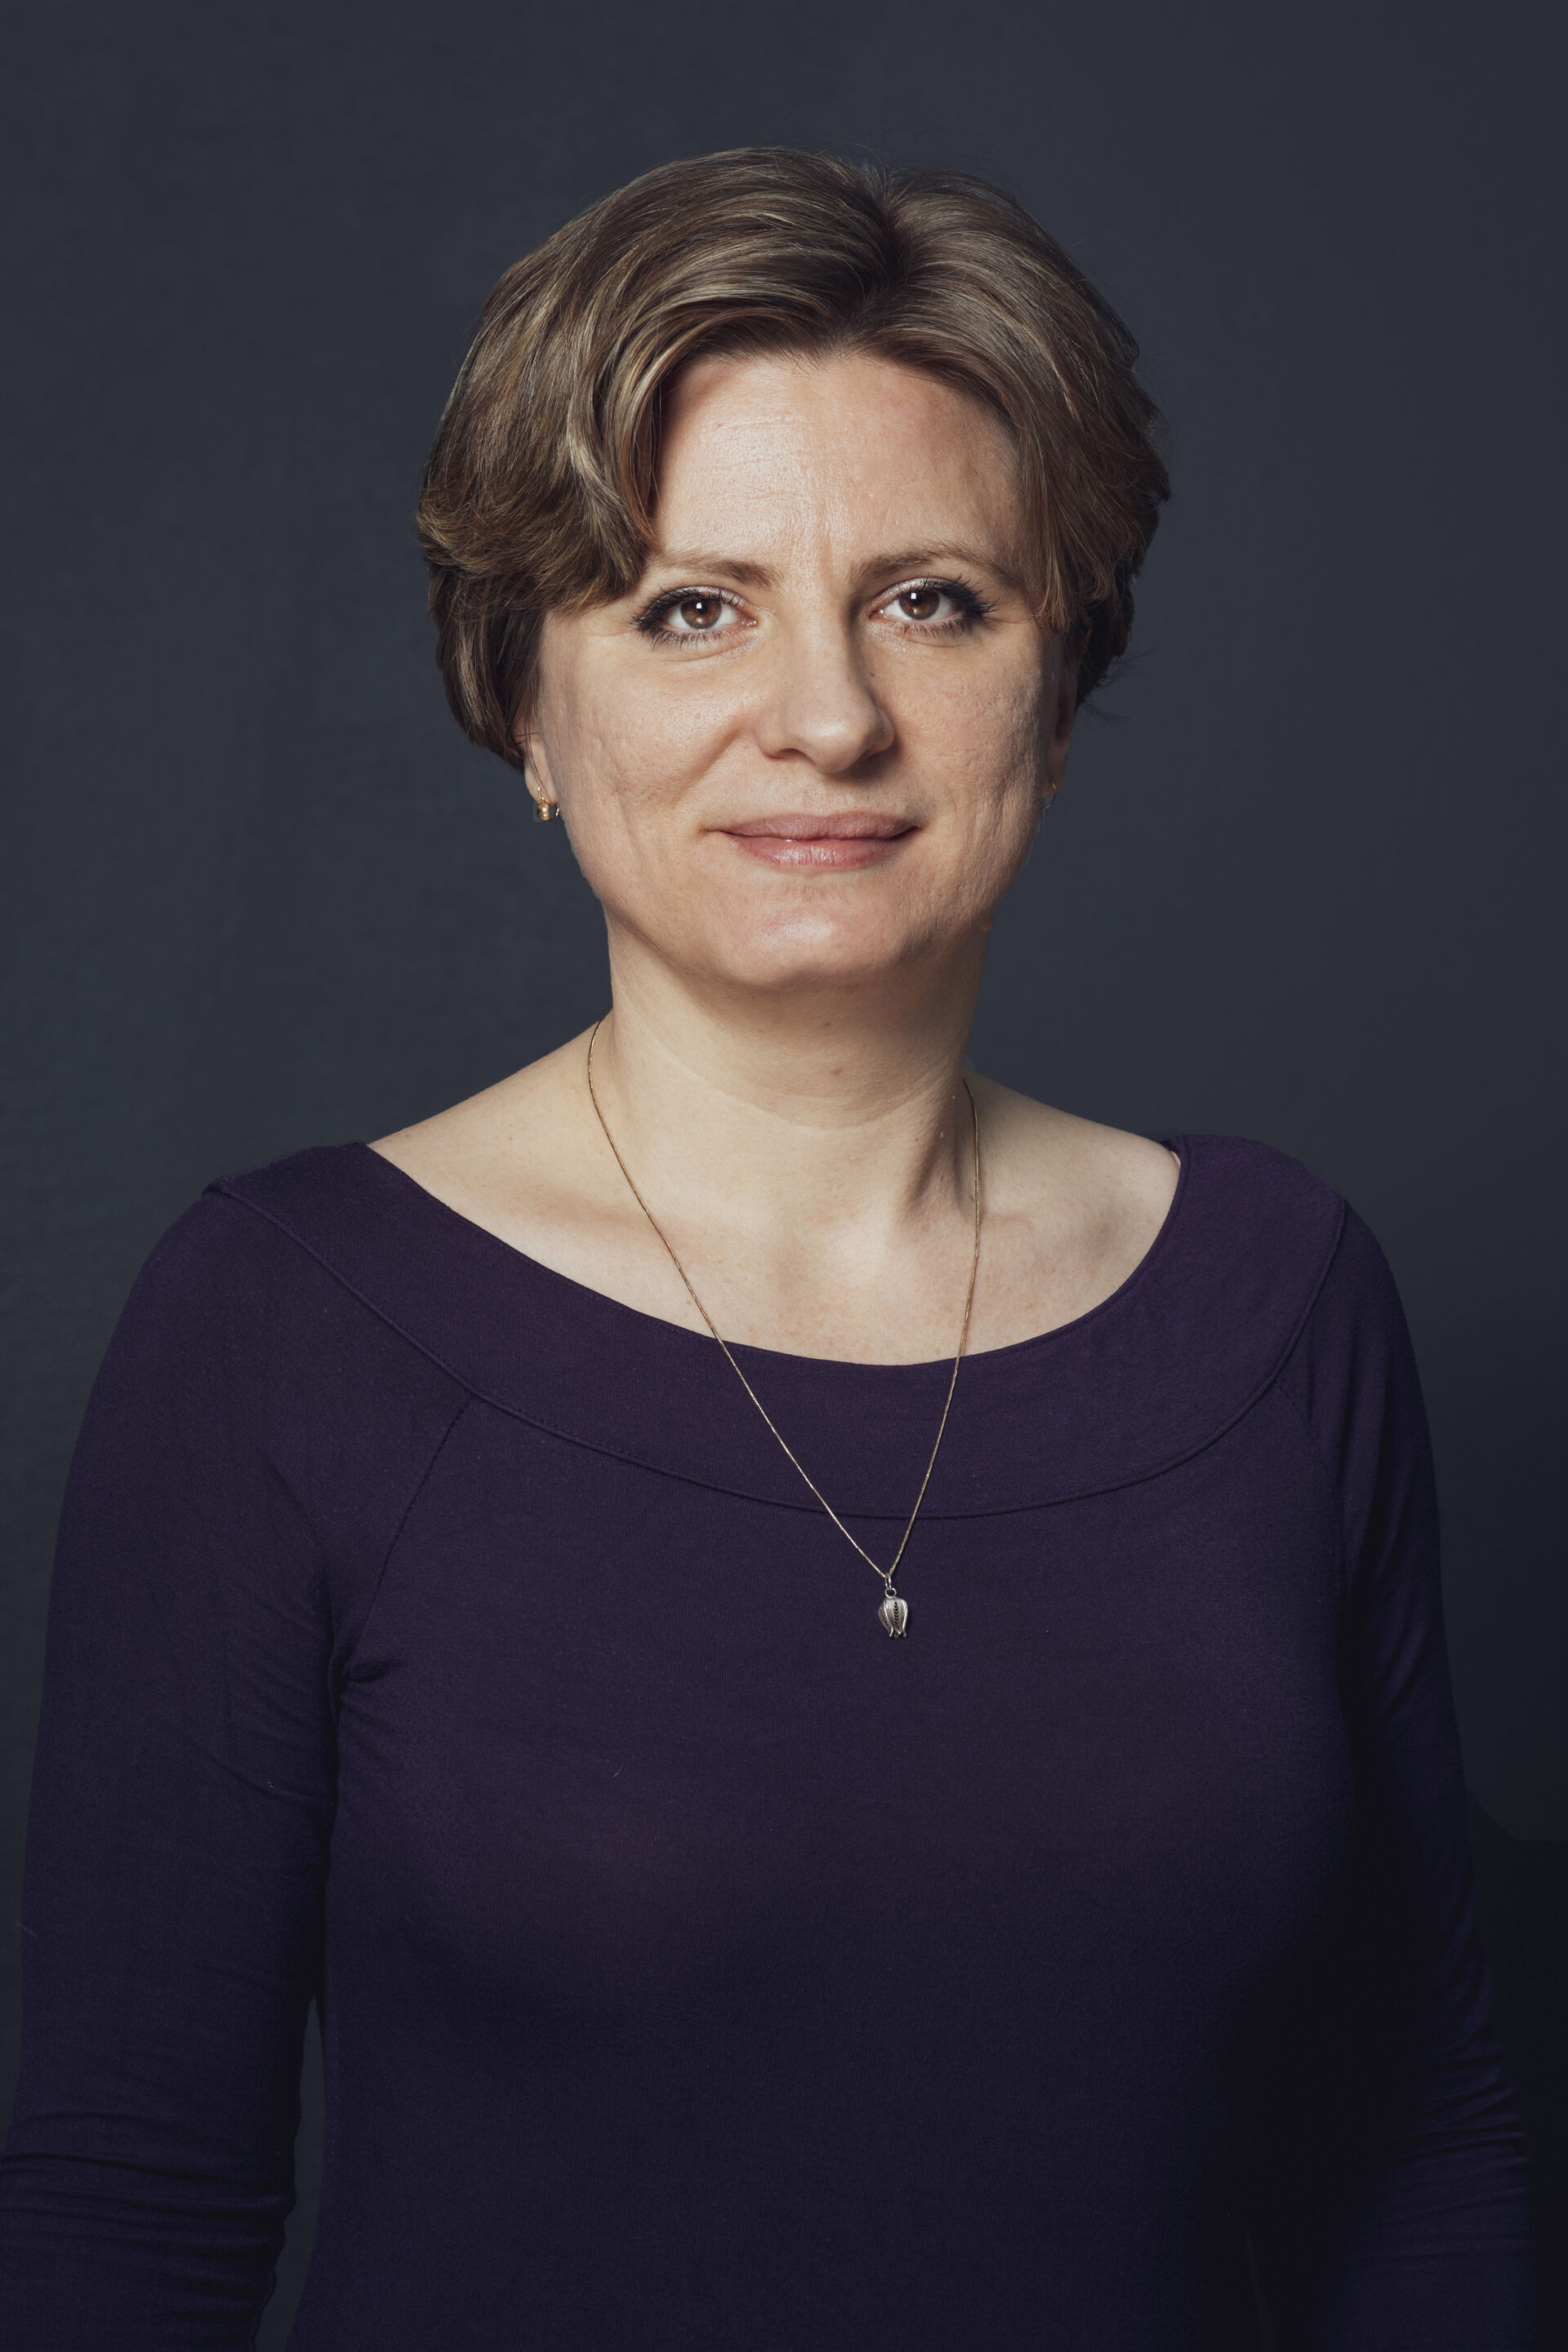 photo of group leader Nikolina Sekulic